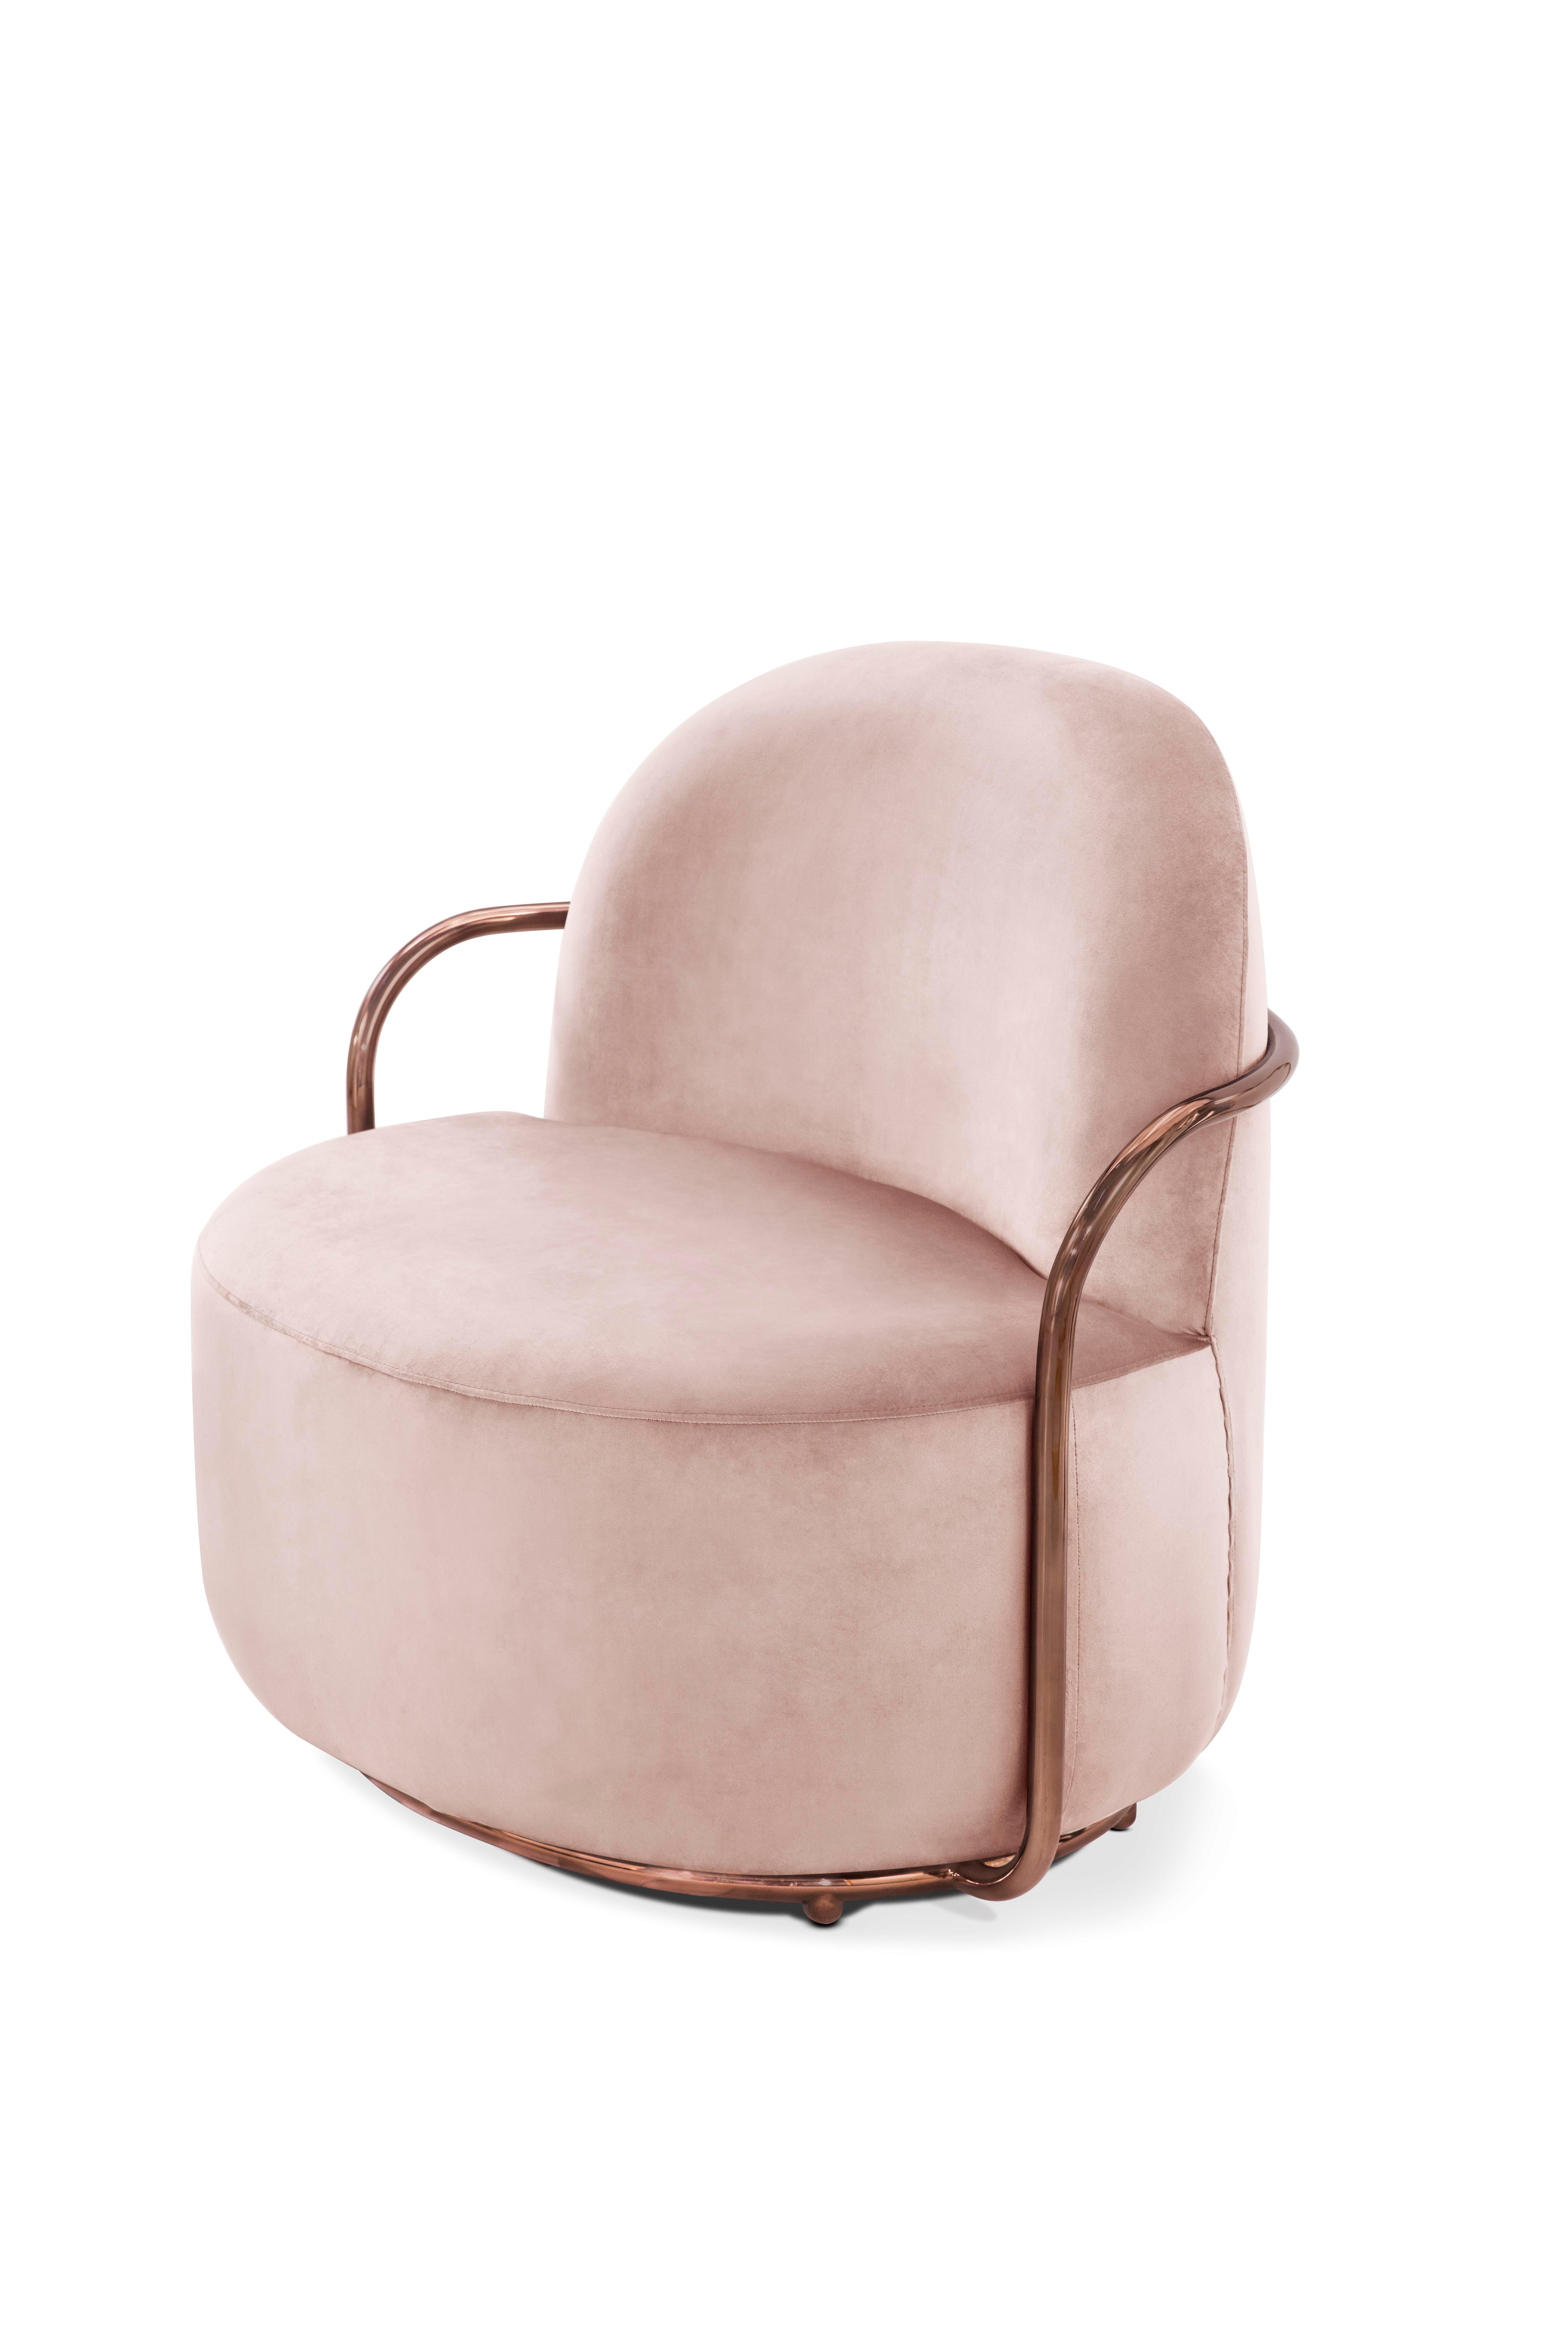 Der Orion Lounge Chair mit plüschigem rosa Samt und roségoldenen Armlehnen von Nika Zupanc bietet ein hübsches Bild in blassrosa Samt und roségoldenen Metallarmen.

Nika Zupanc, eine auffallend renommierte slowenische Designerin, scheut sich nicht,